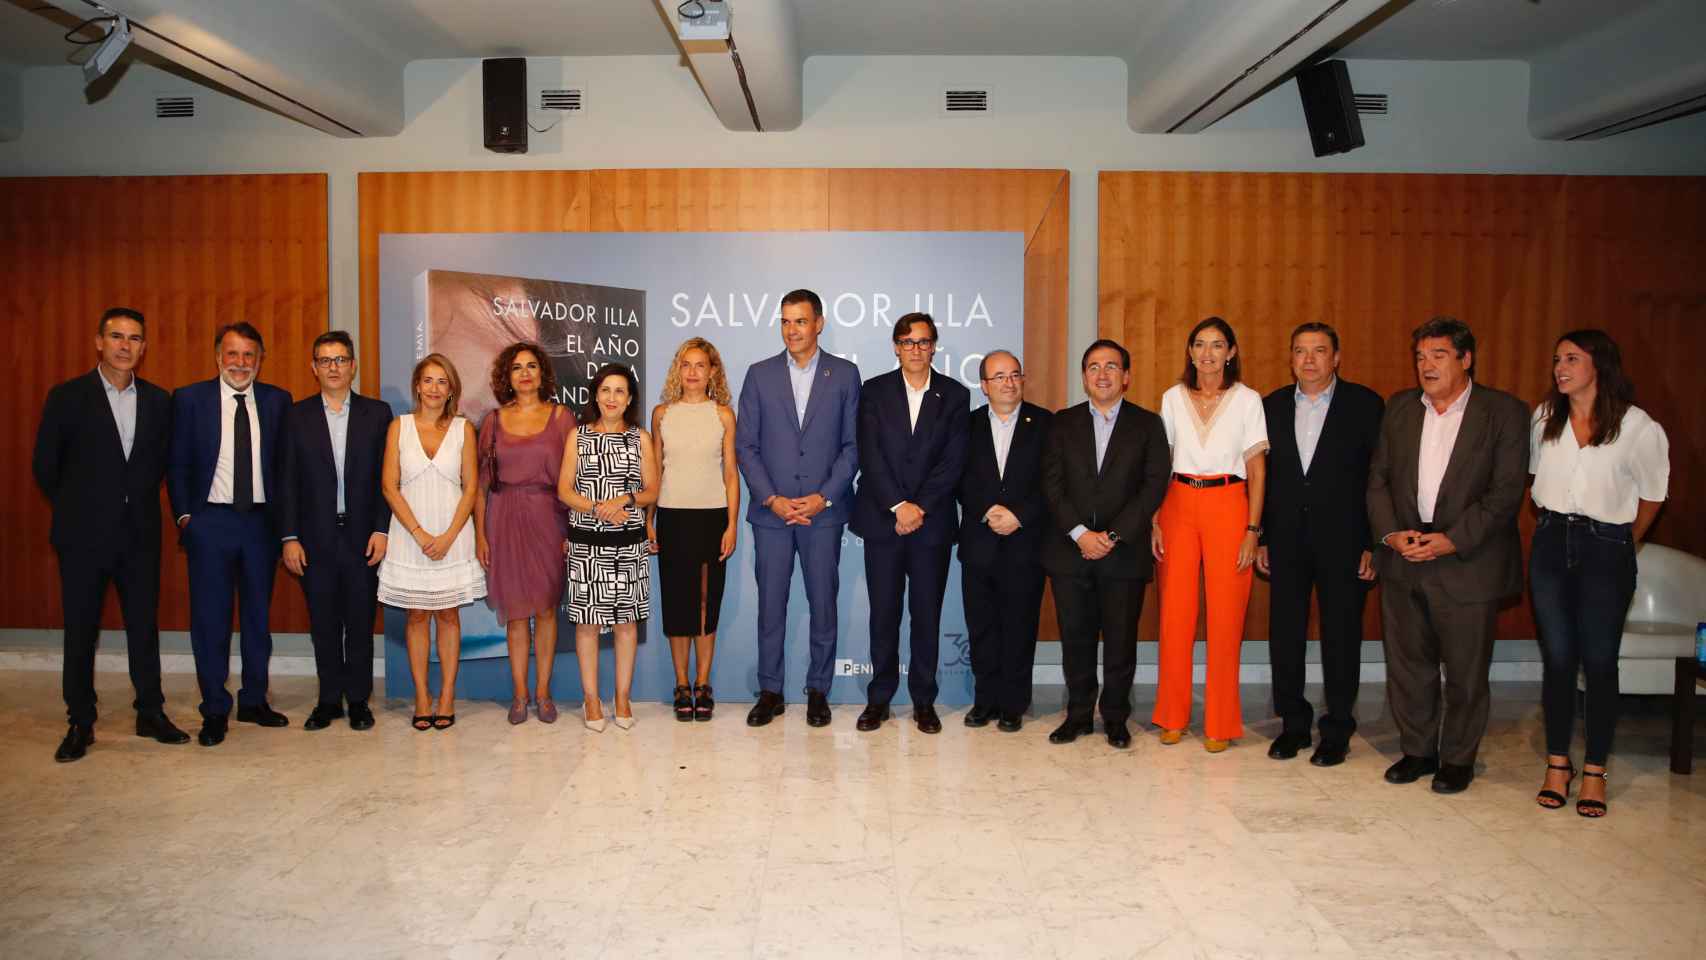 Salvador Illa presenta 'El año de la pandemia' acompañado de Sánchez y otros miembros del Gobierno